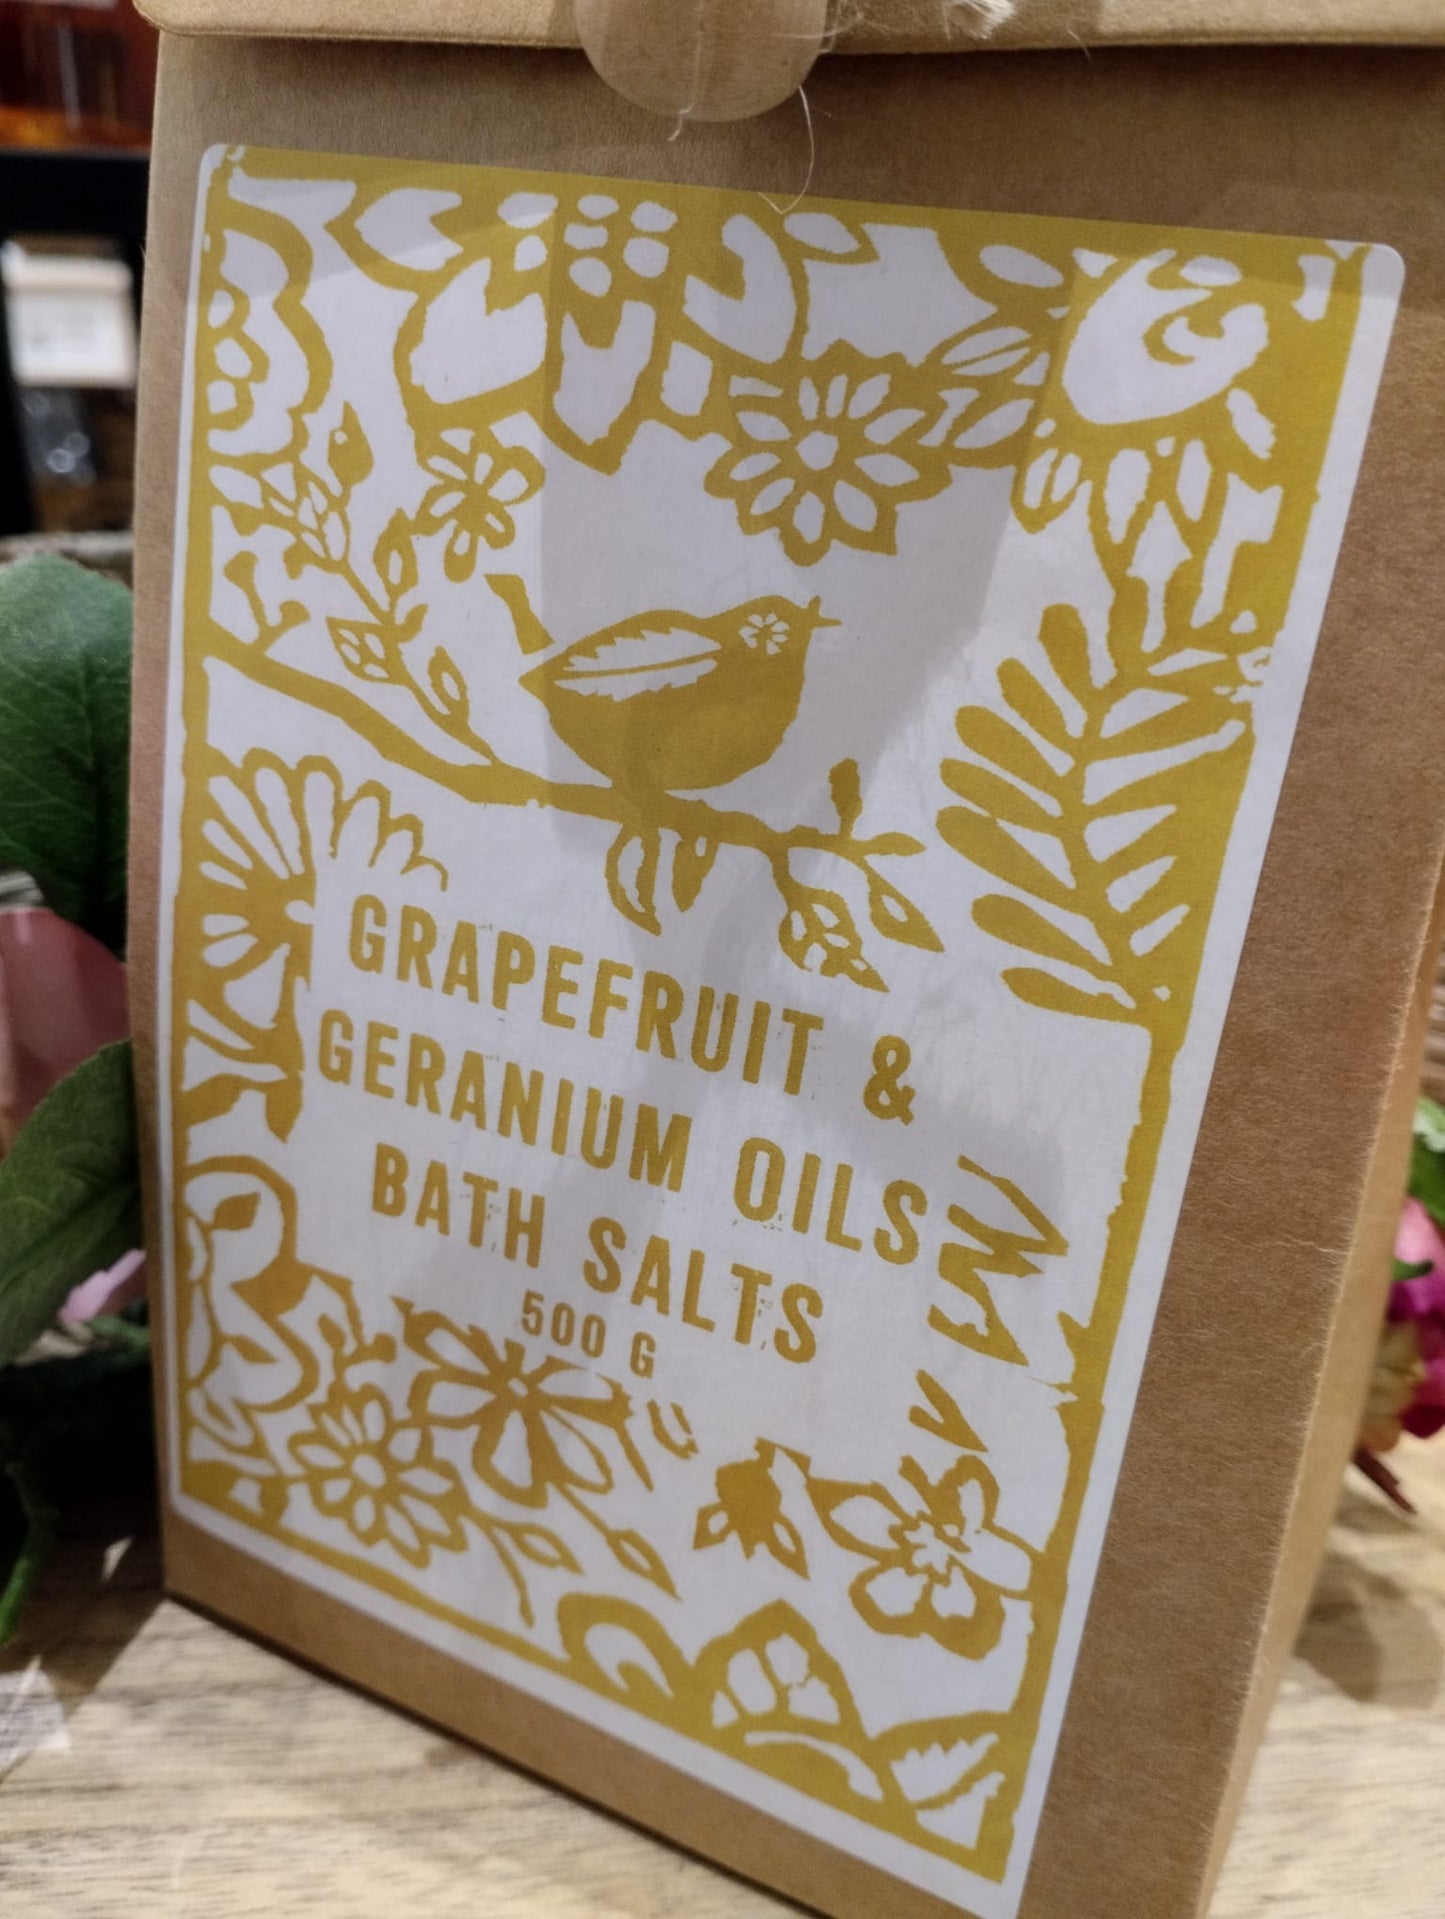 Badsalt - Grapefruit och Pelargon Oils - 500g